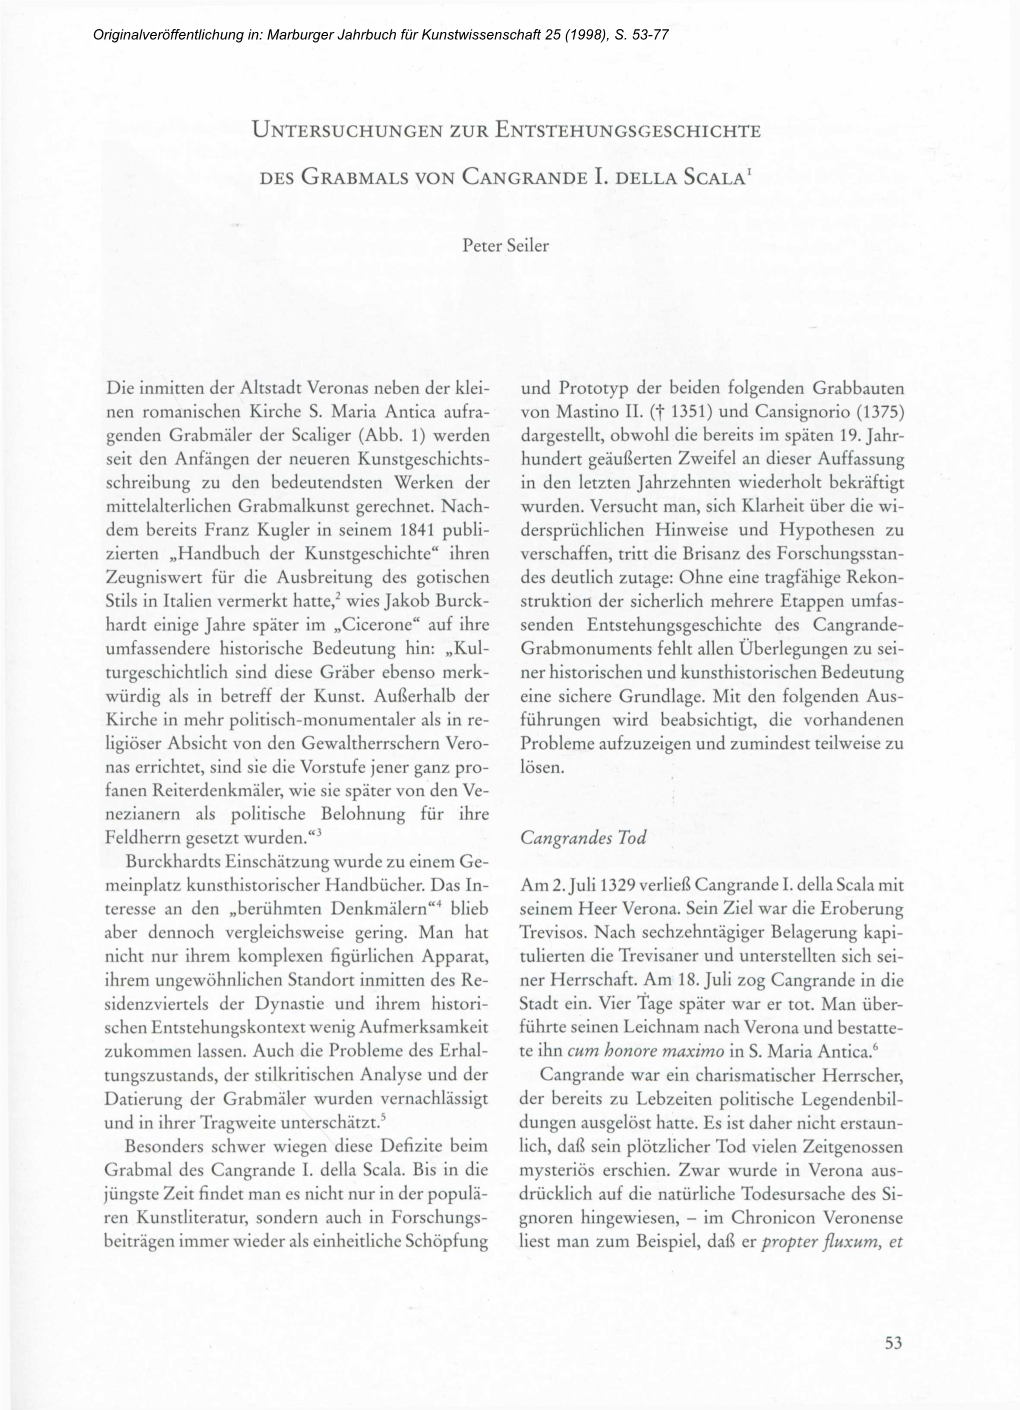 Untersuchungen Zur Entstehungsgeschichte Des Grabmals Von Cangrande I. Della Scala1 53